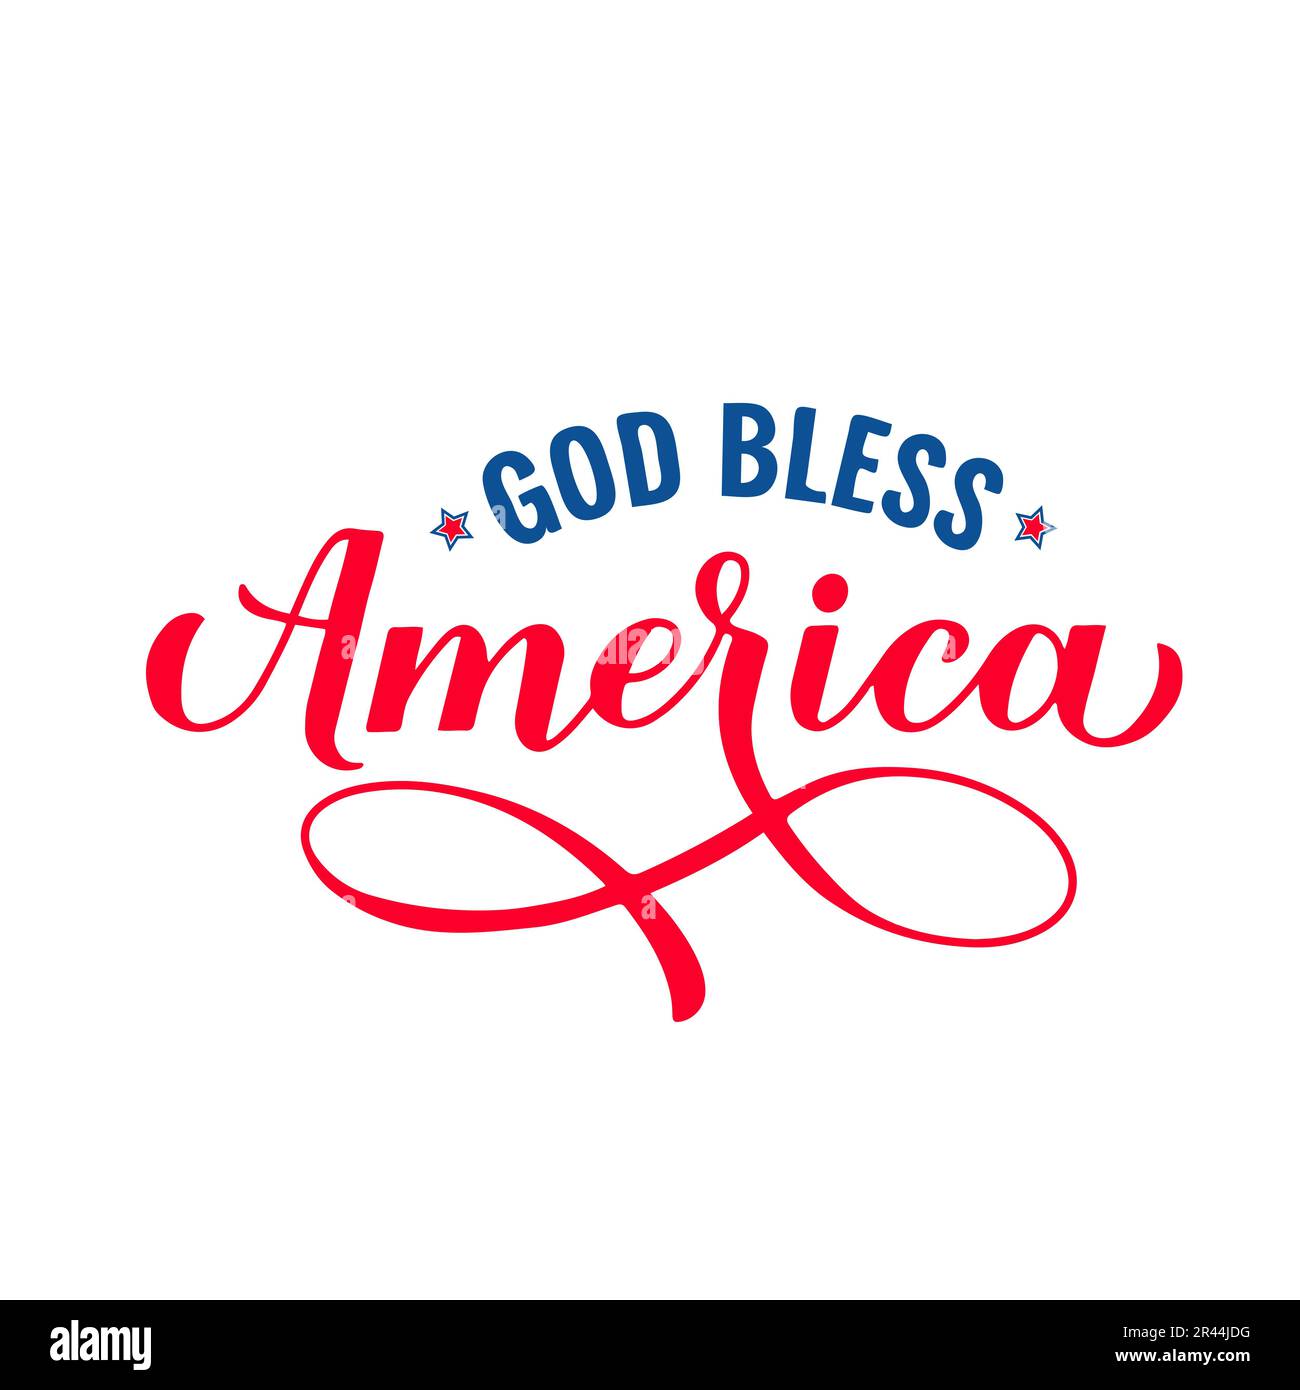 Gott schütze Amerika. Patriotisches Zitat. Design für Juli 4. US-Unabhängigkeitstag. Vektorvorlage für Typografie-Poster, Banner, Grußkarte, Hemd usw. Stock Vektor